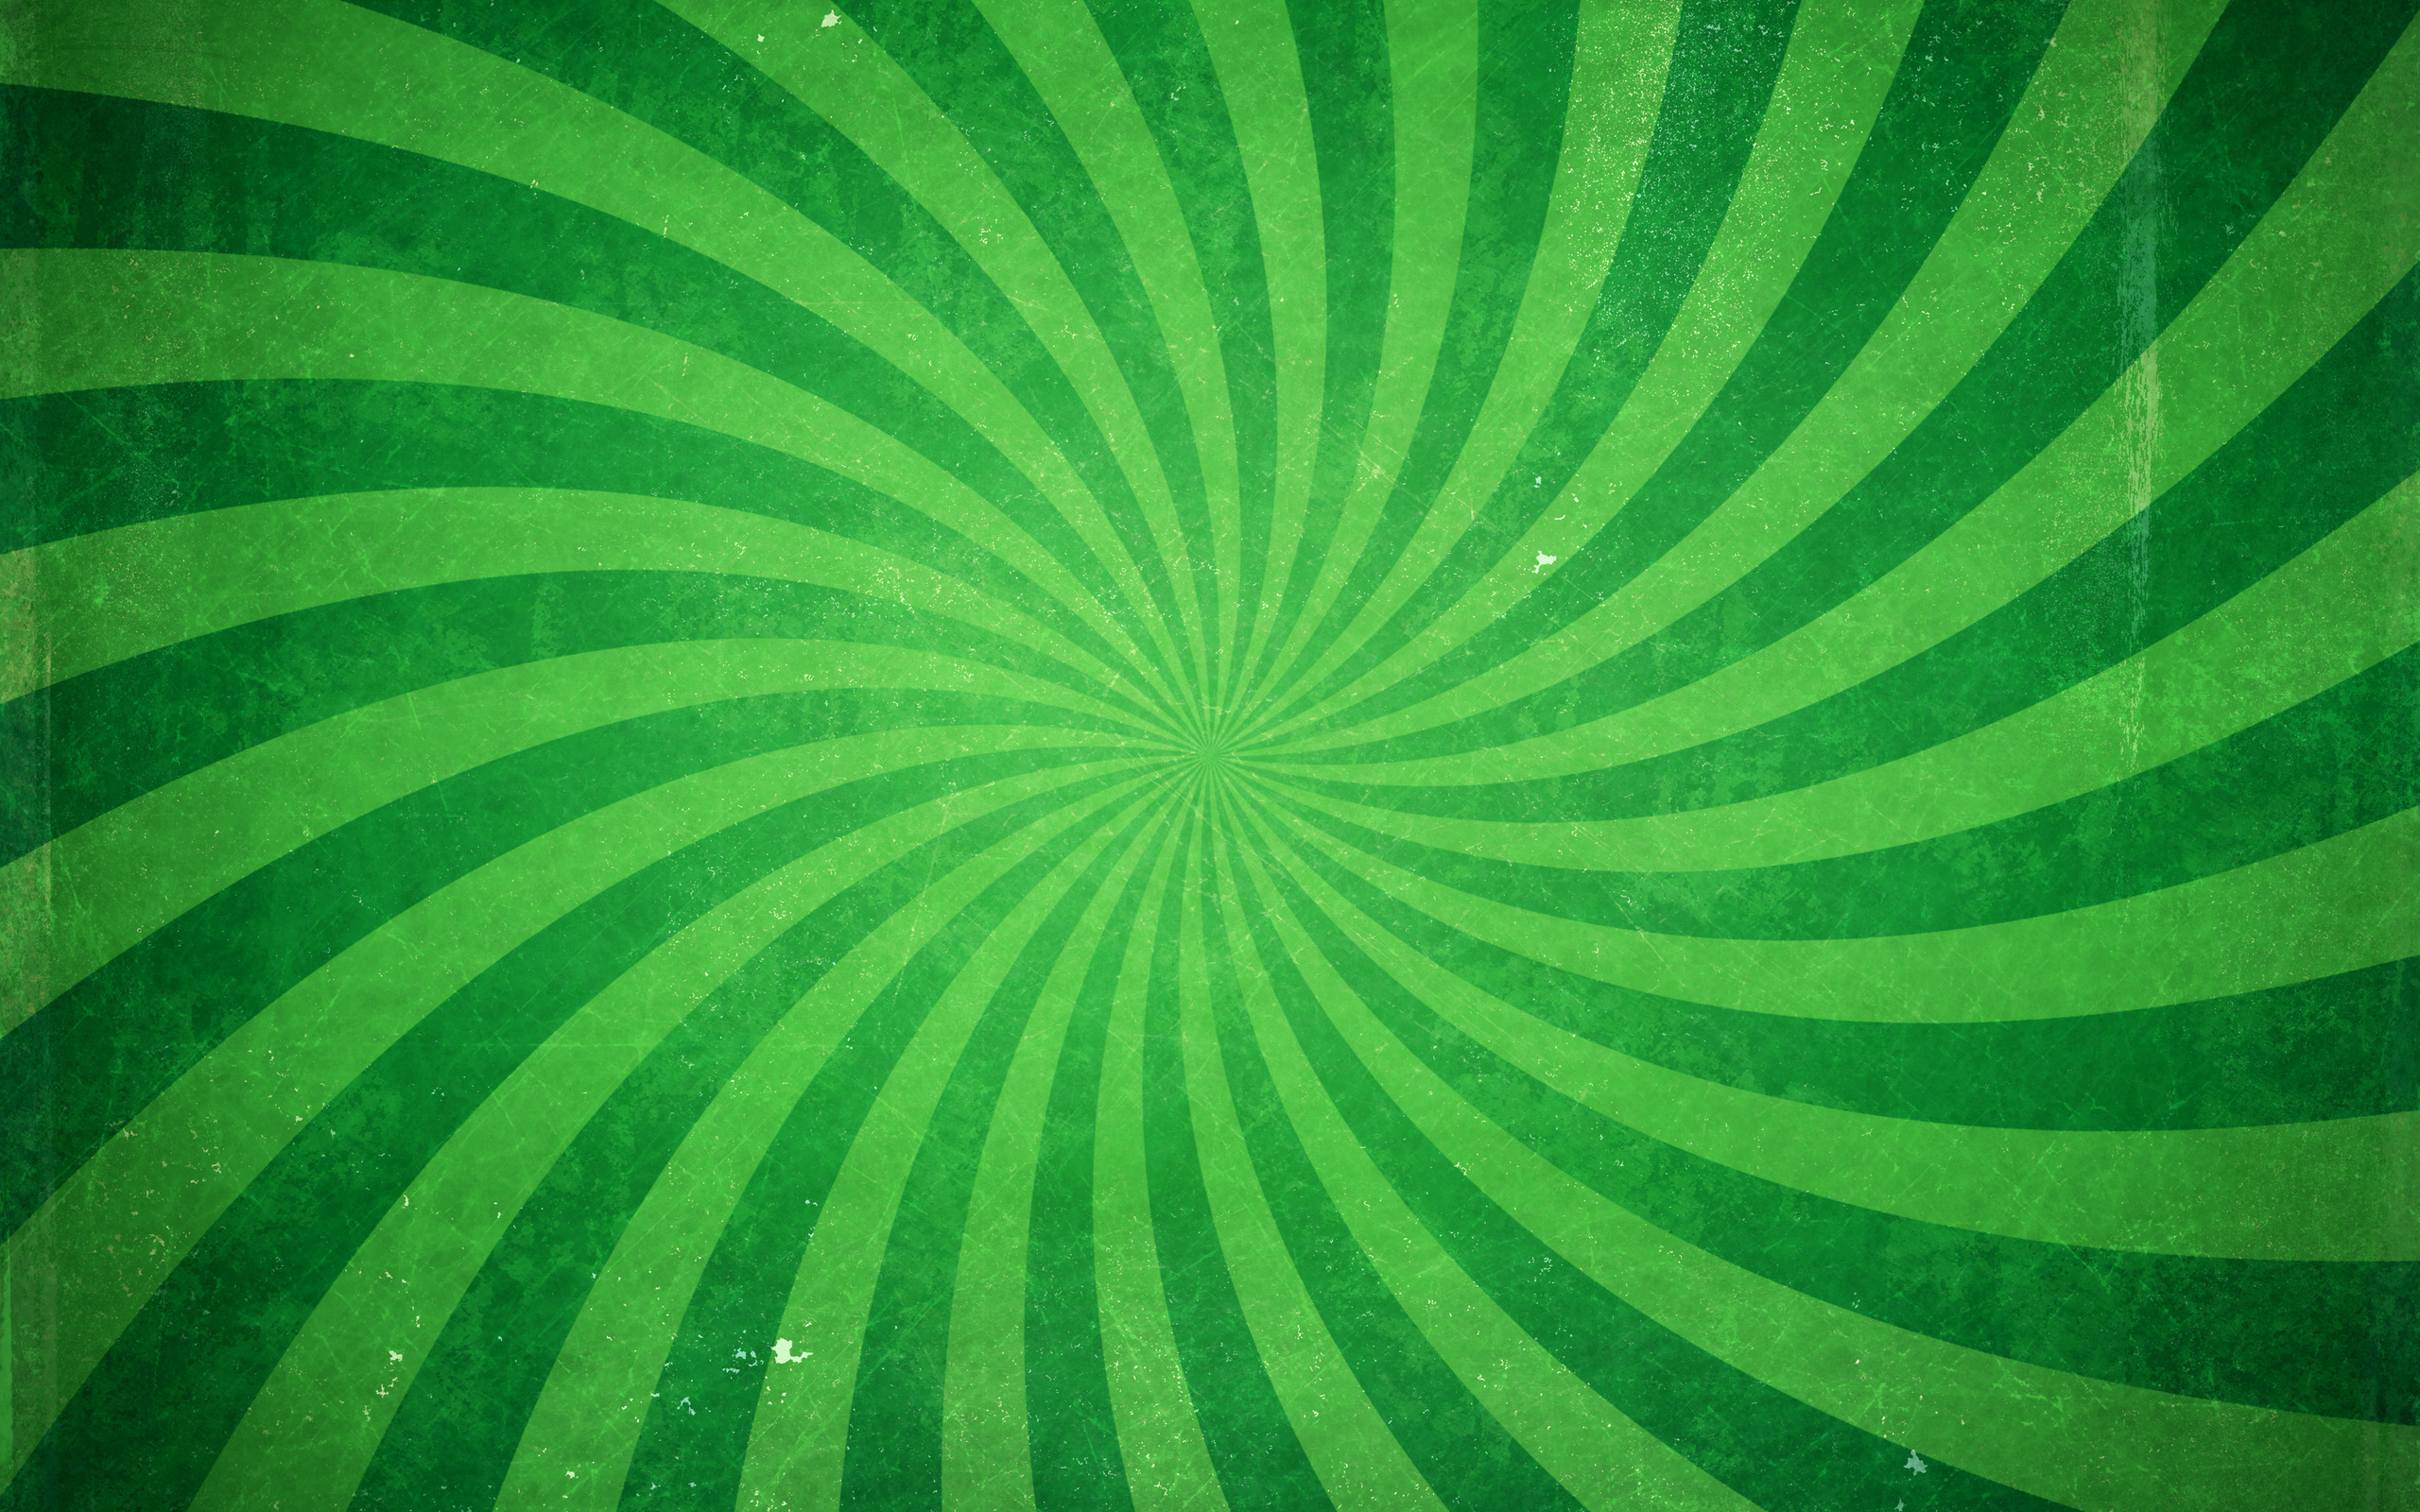 Green wallpaper